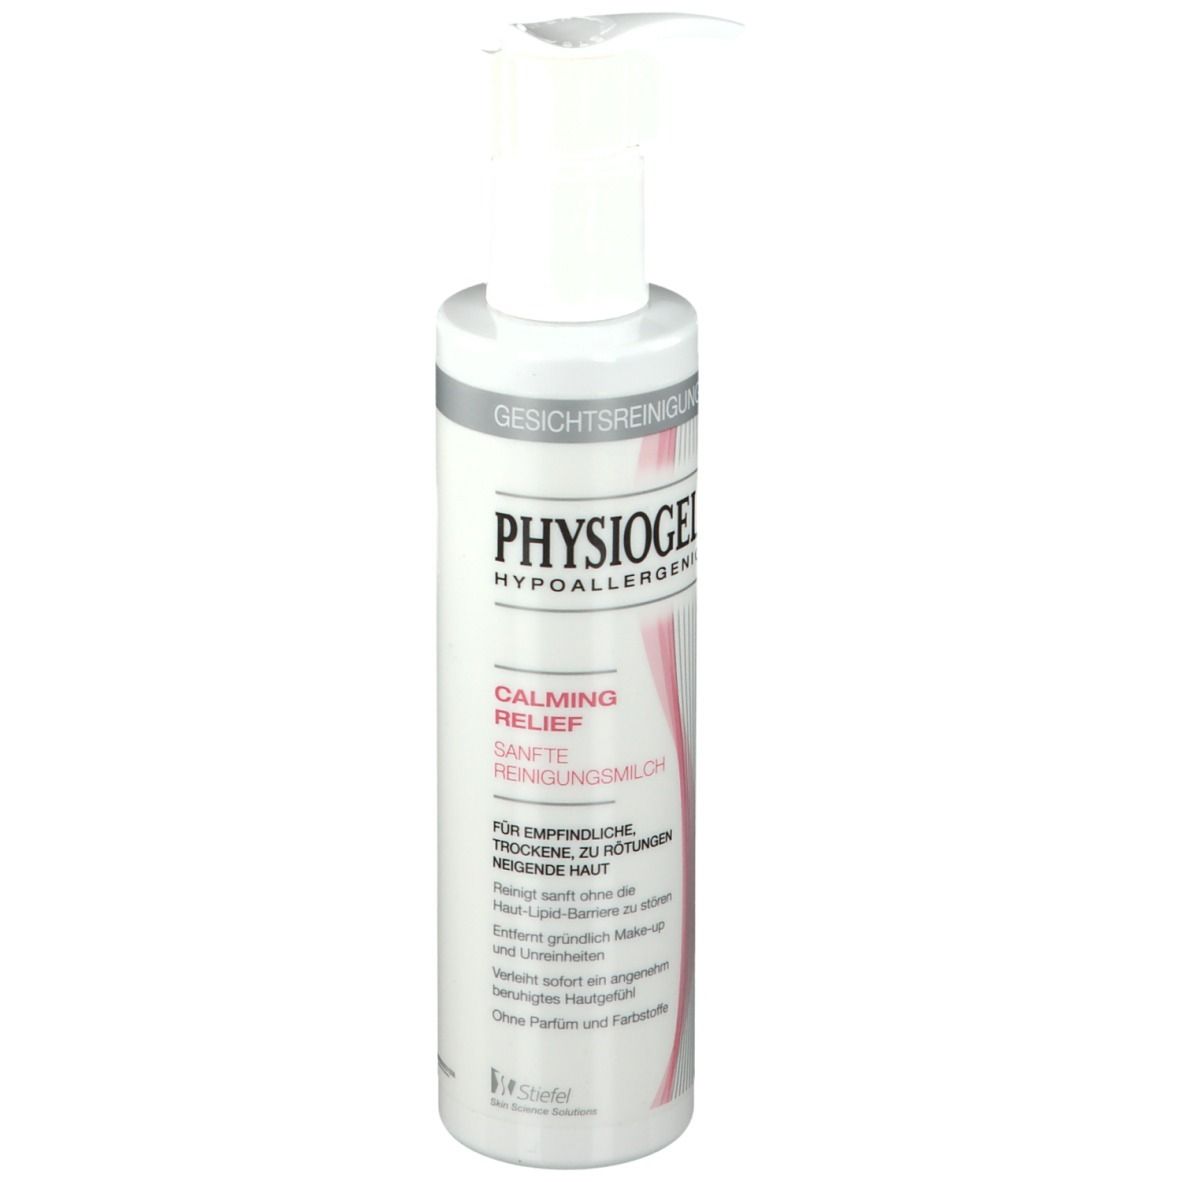 PHYSIOGEL® Calming Relief Sanfte Reinigungsmilch 200ml - empfindliche Haut